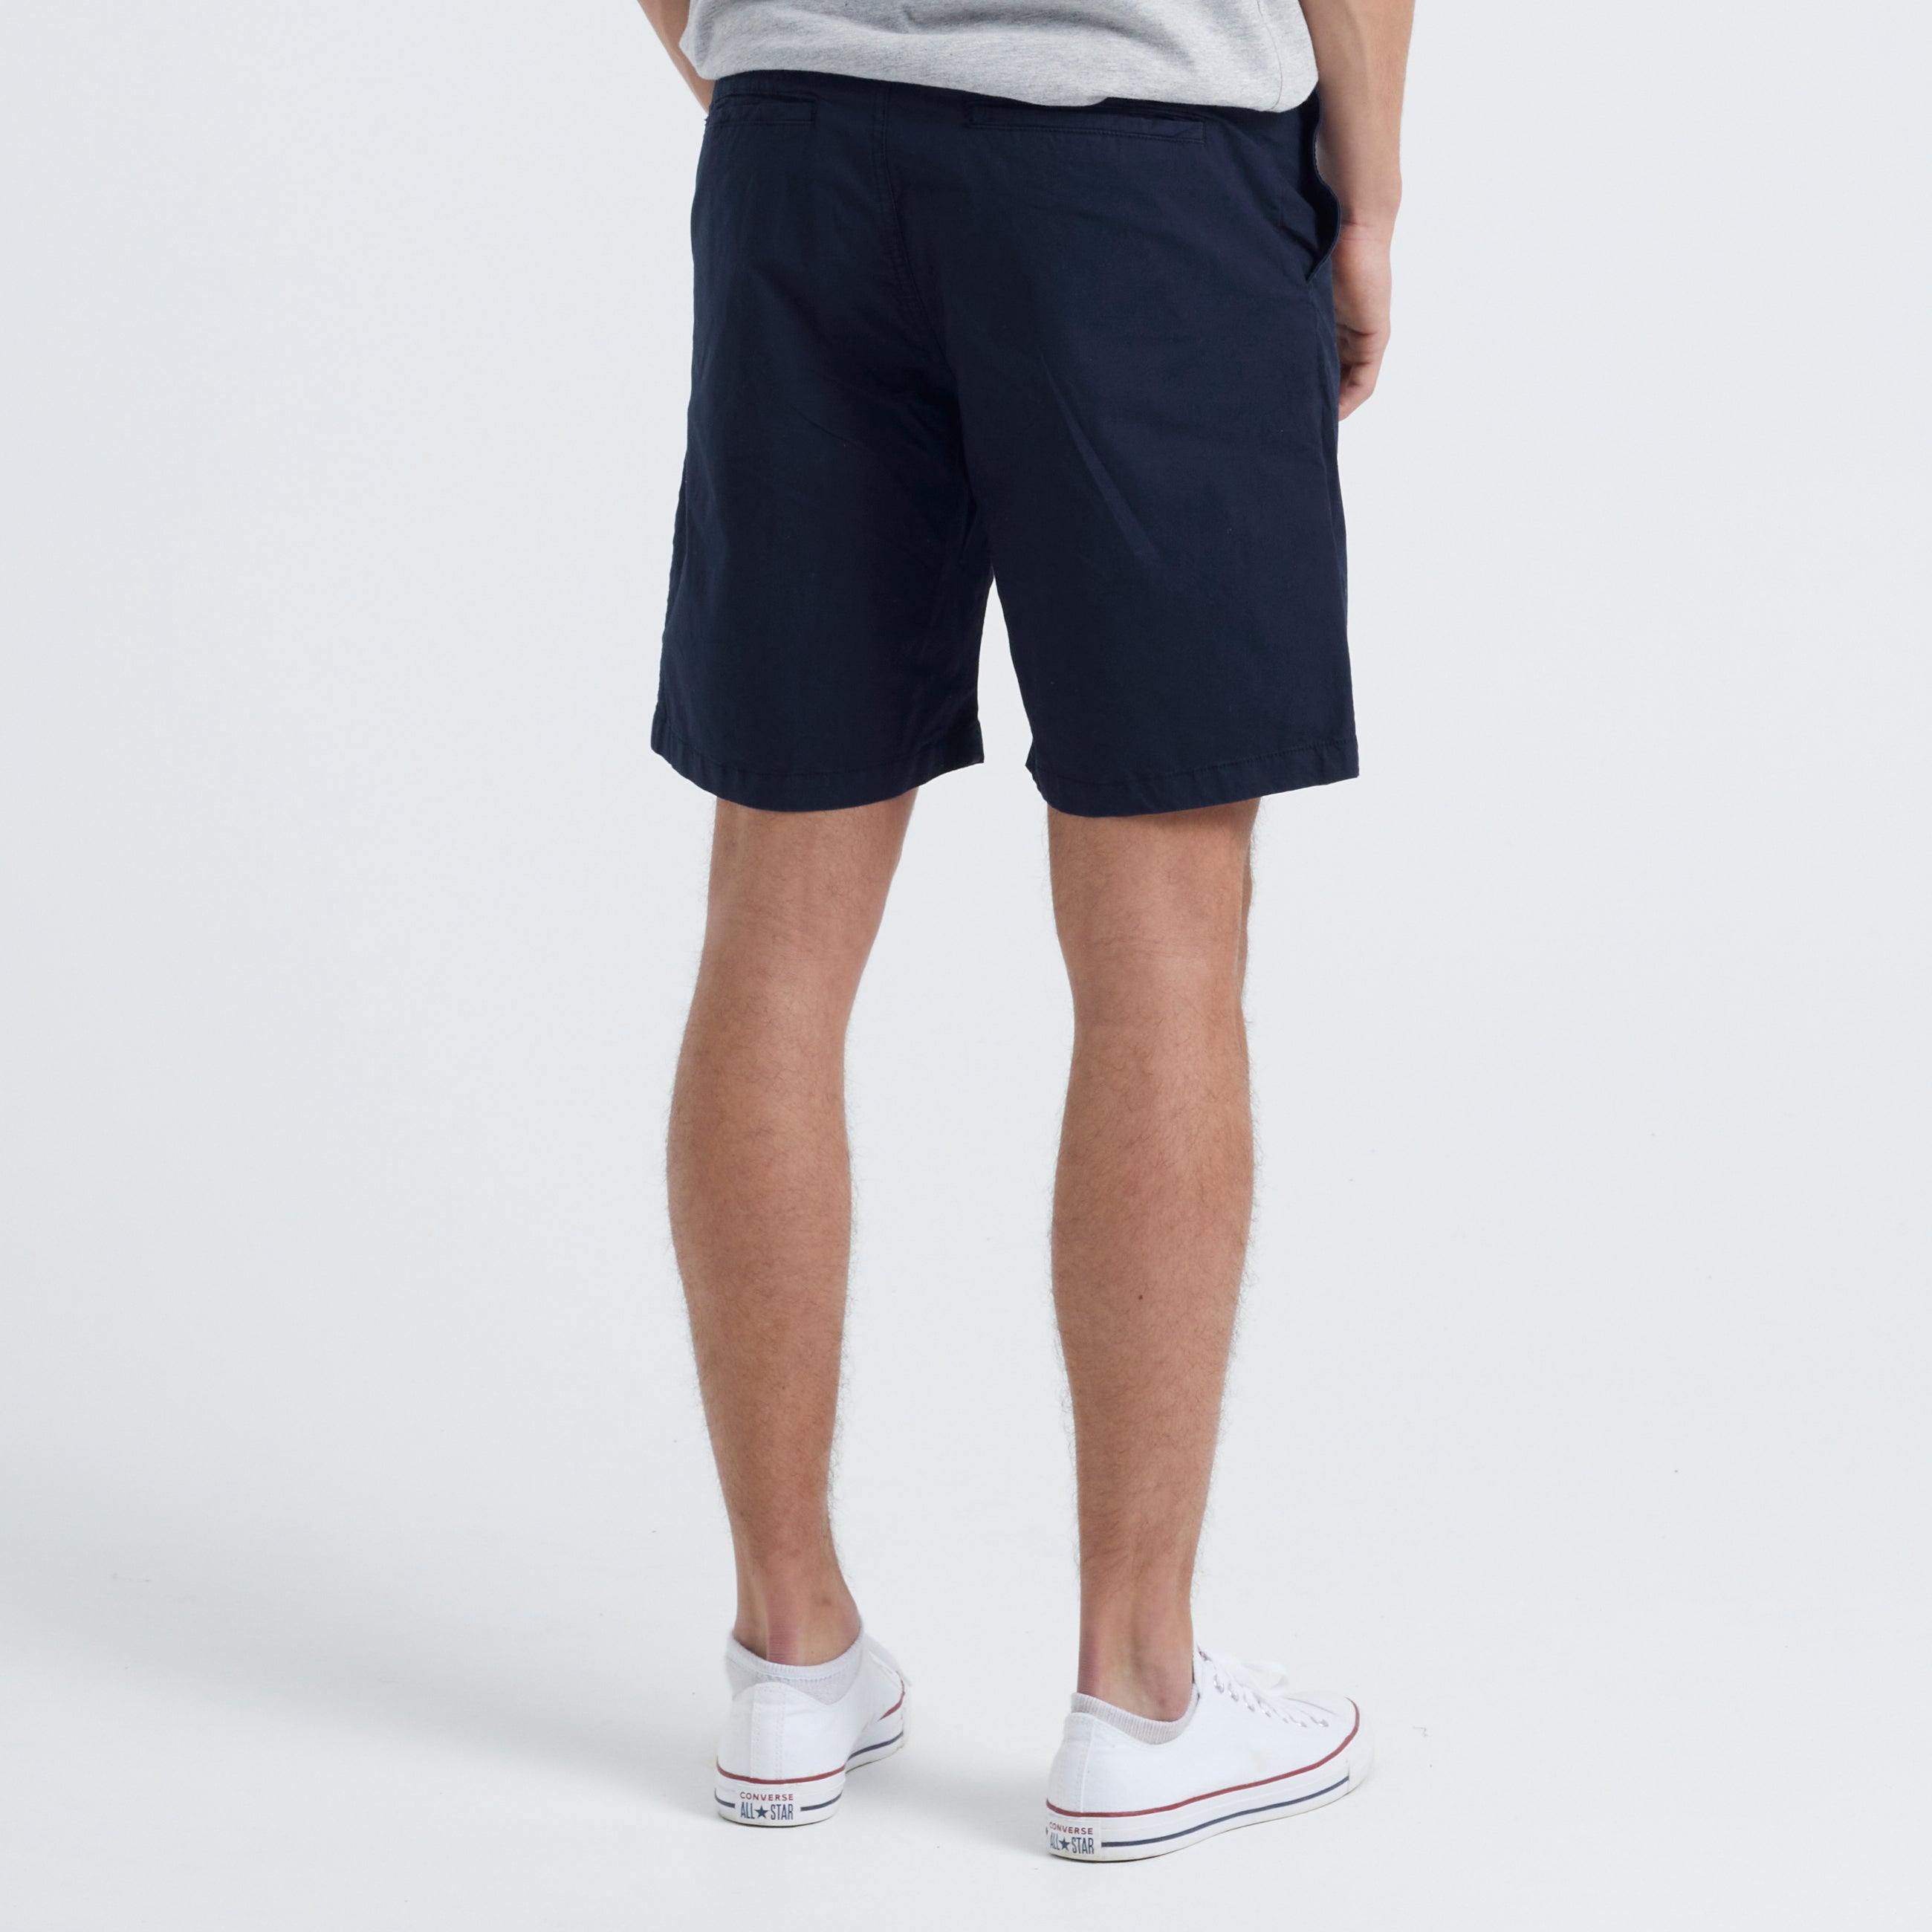 By Garment Makers Gideon Leichte Baumwollshorts Shorts 3096 Navy Blazer